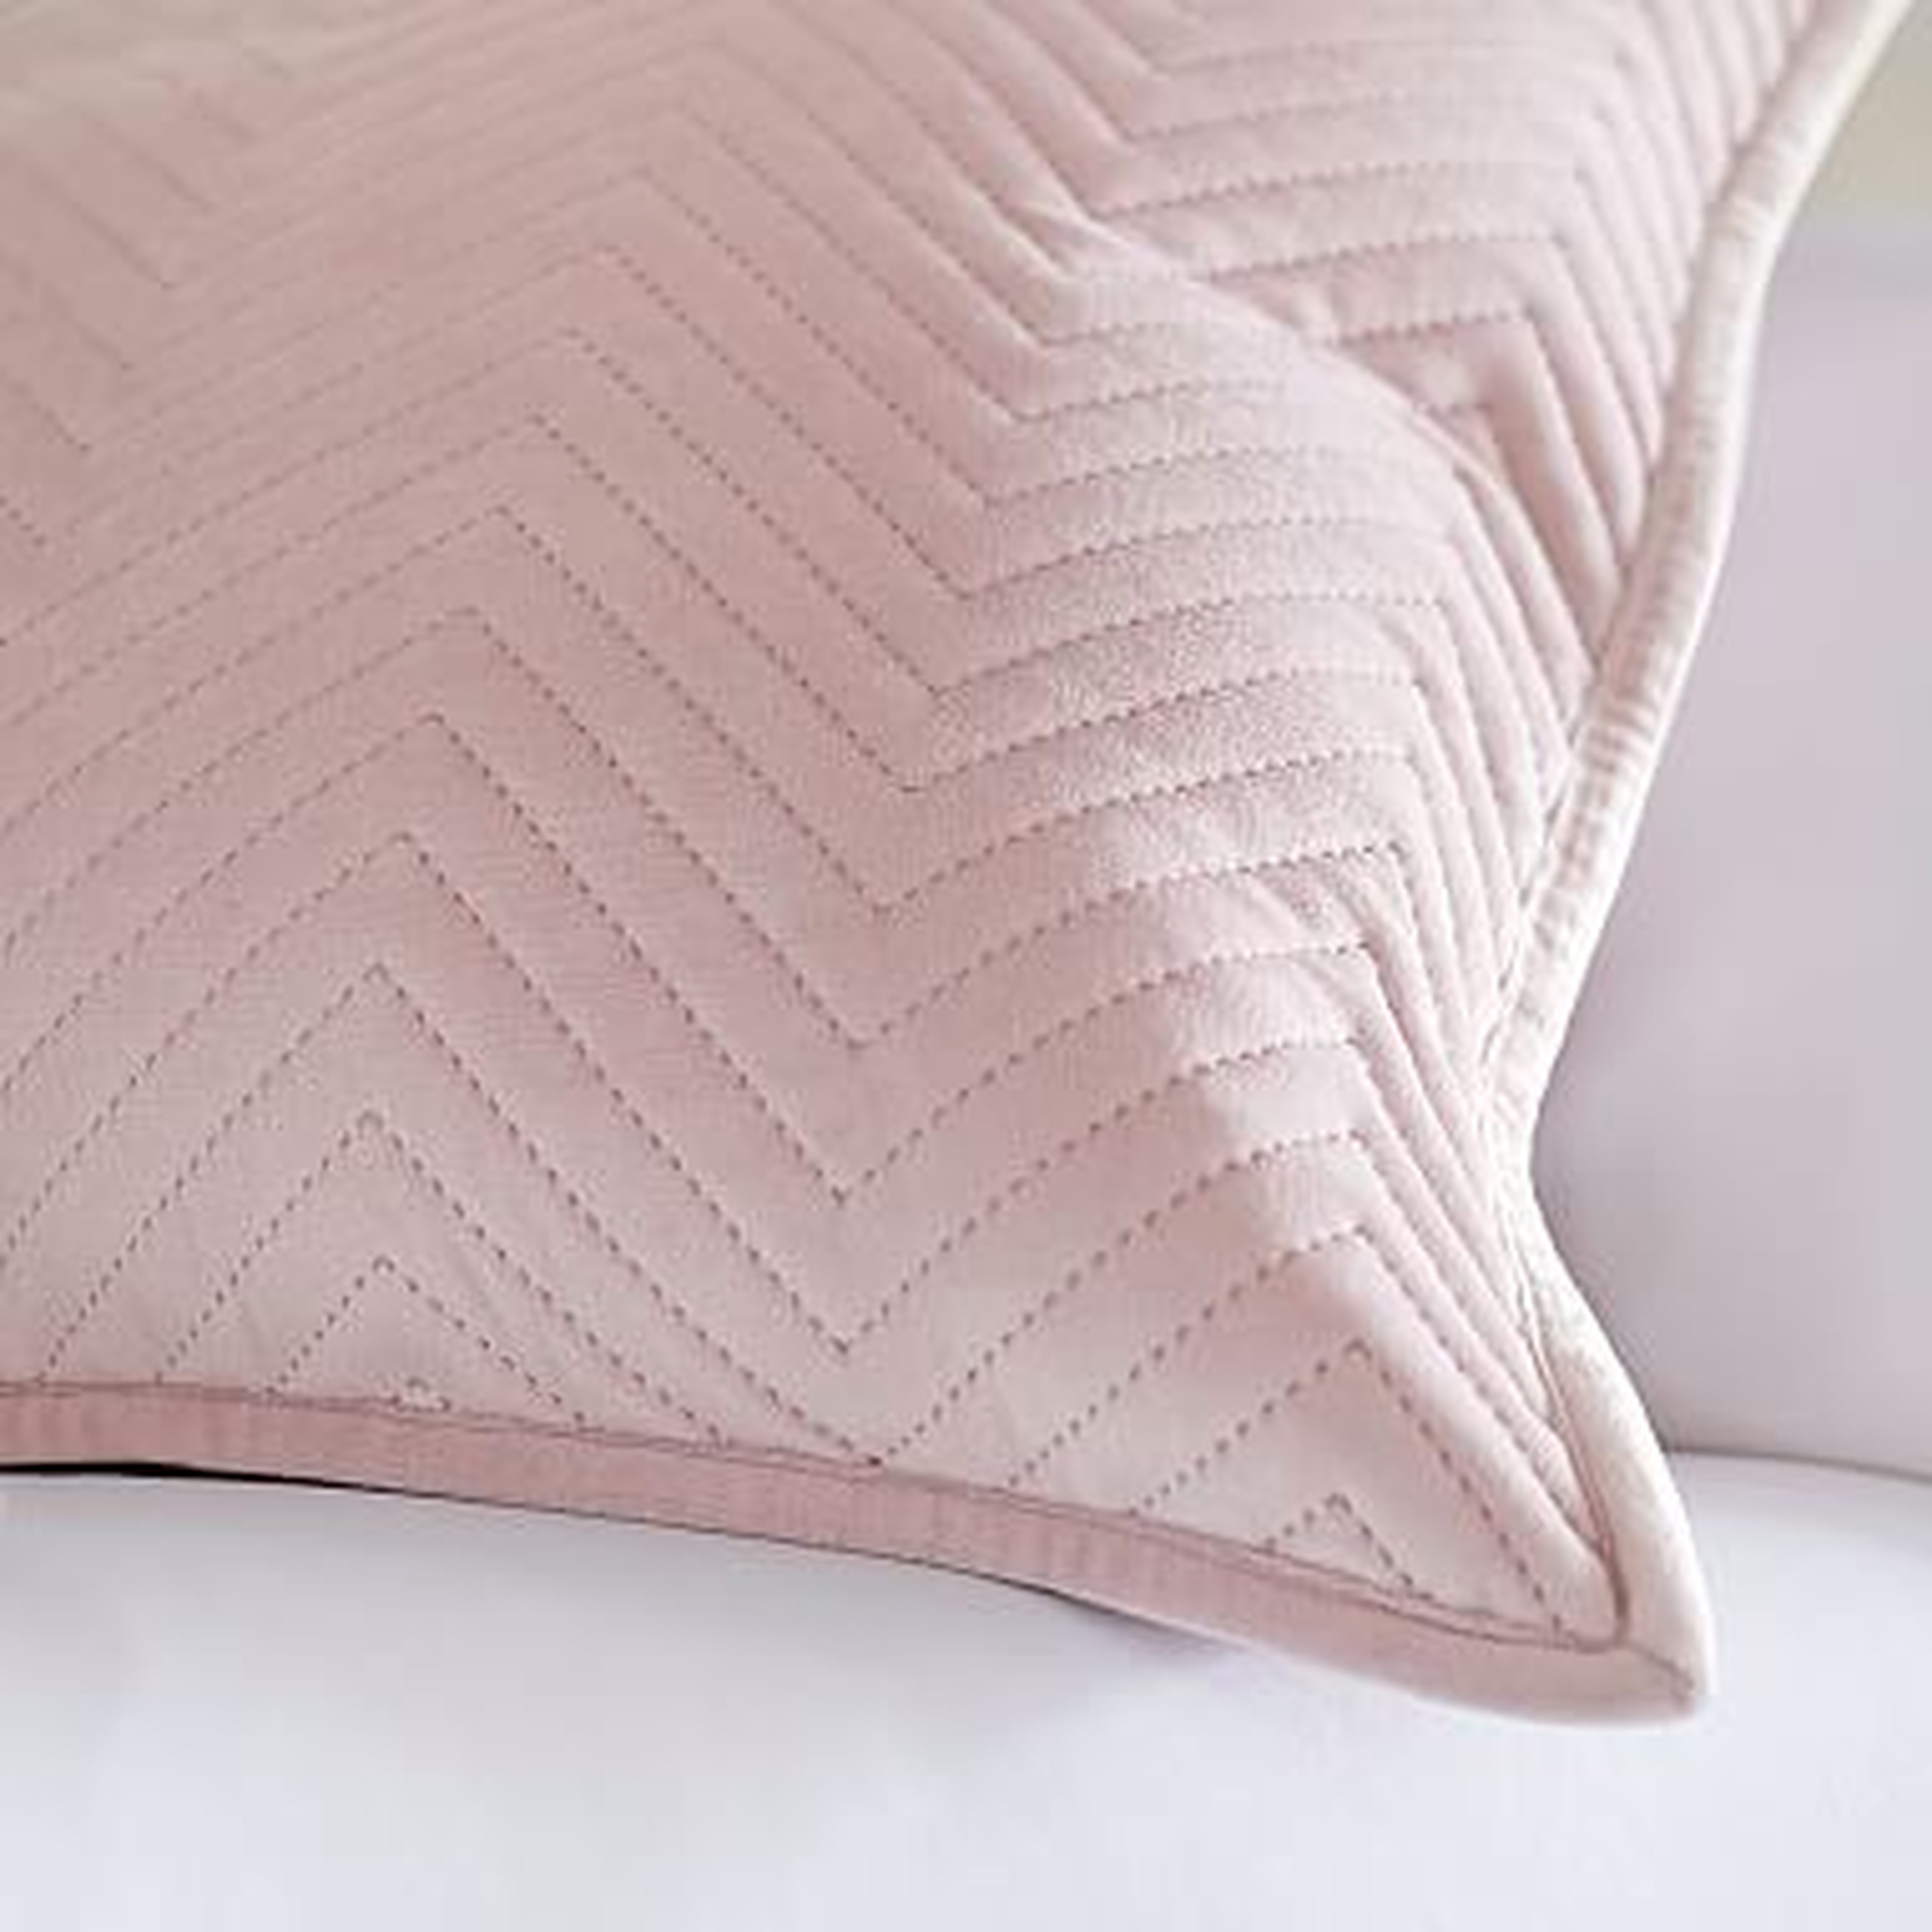 Luxe Velvet Pillow Cover, 18x18, Powdered Blush - Pottery Barn Teen